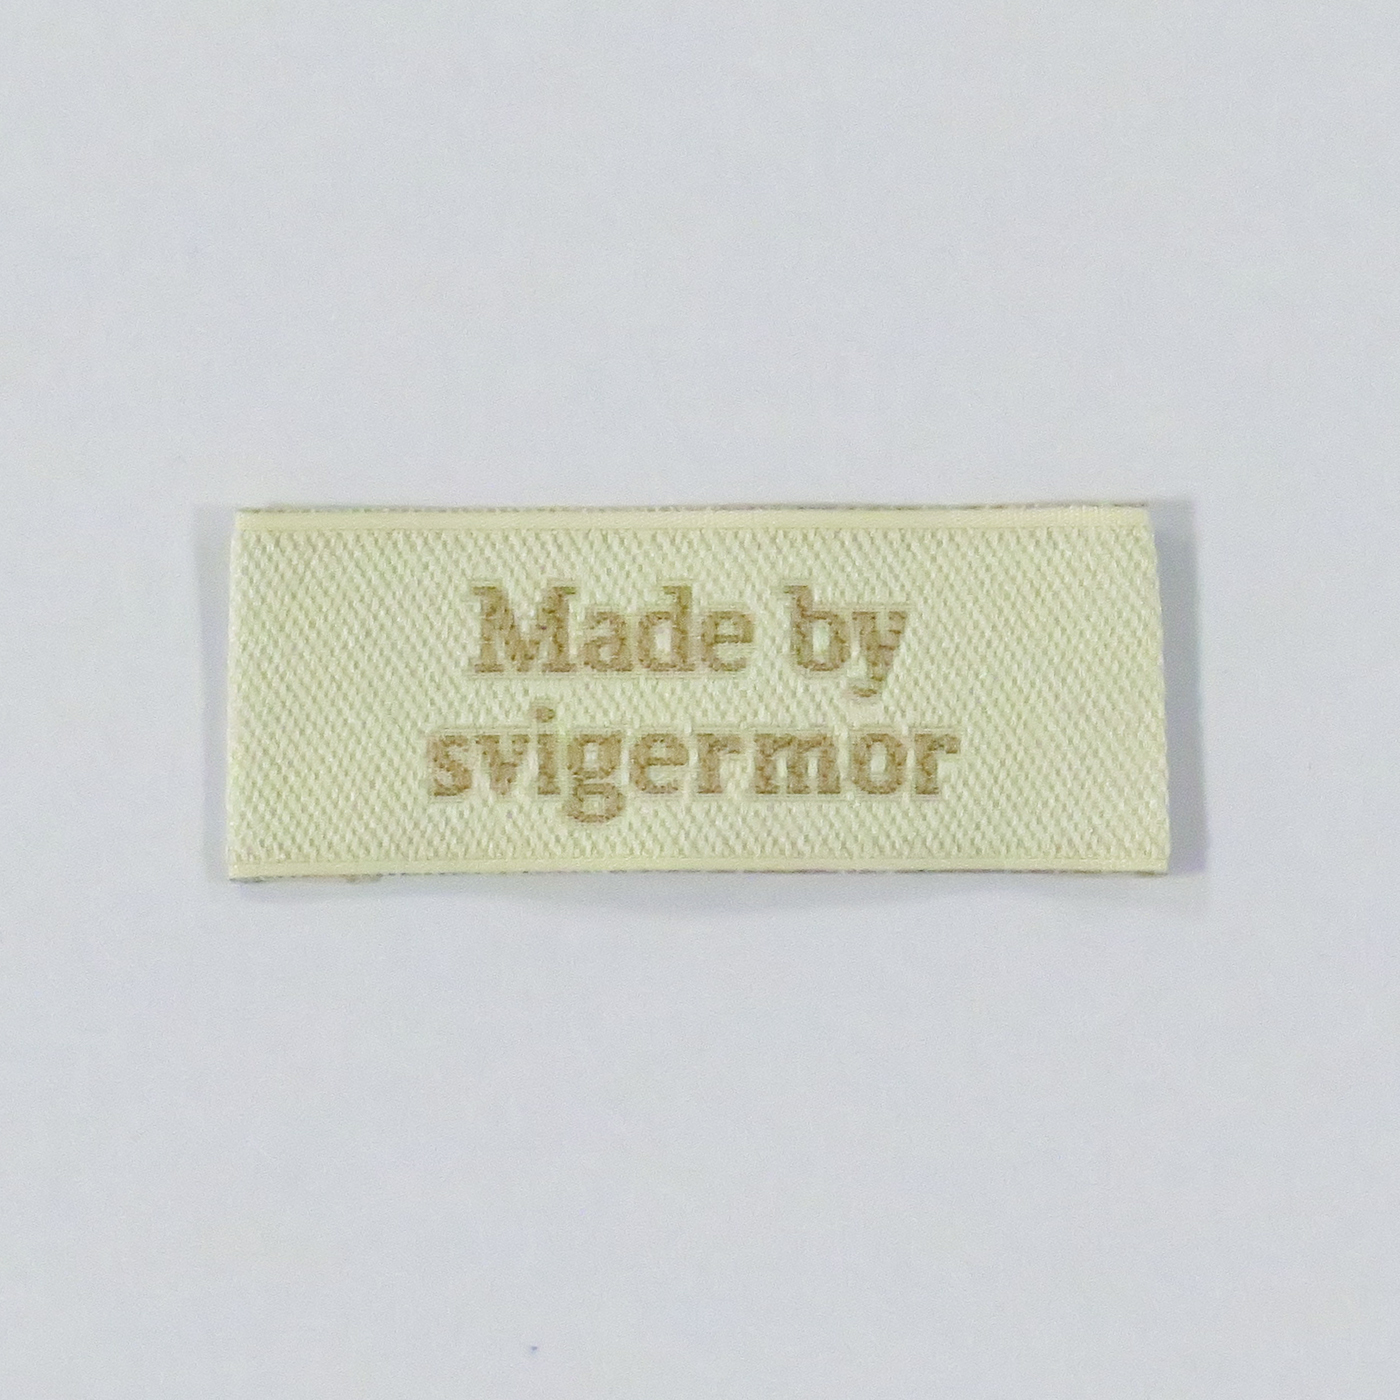 Se Made By Svigermor - Mærke hos Symaskine Torvet